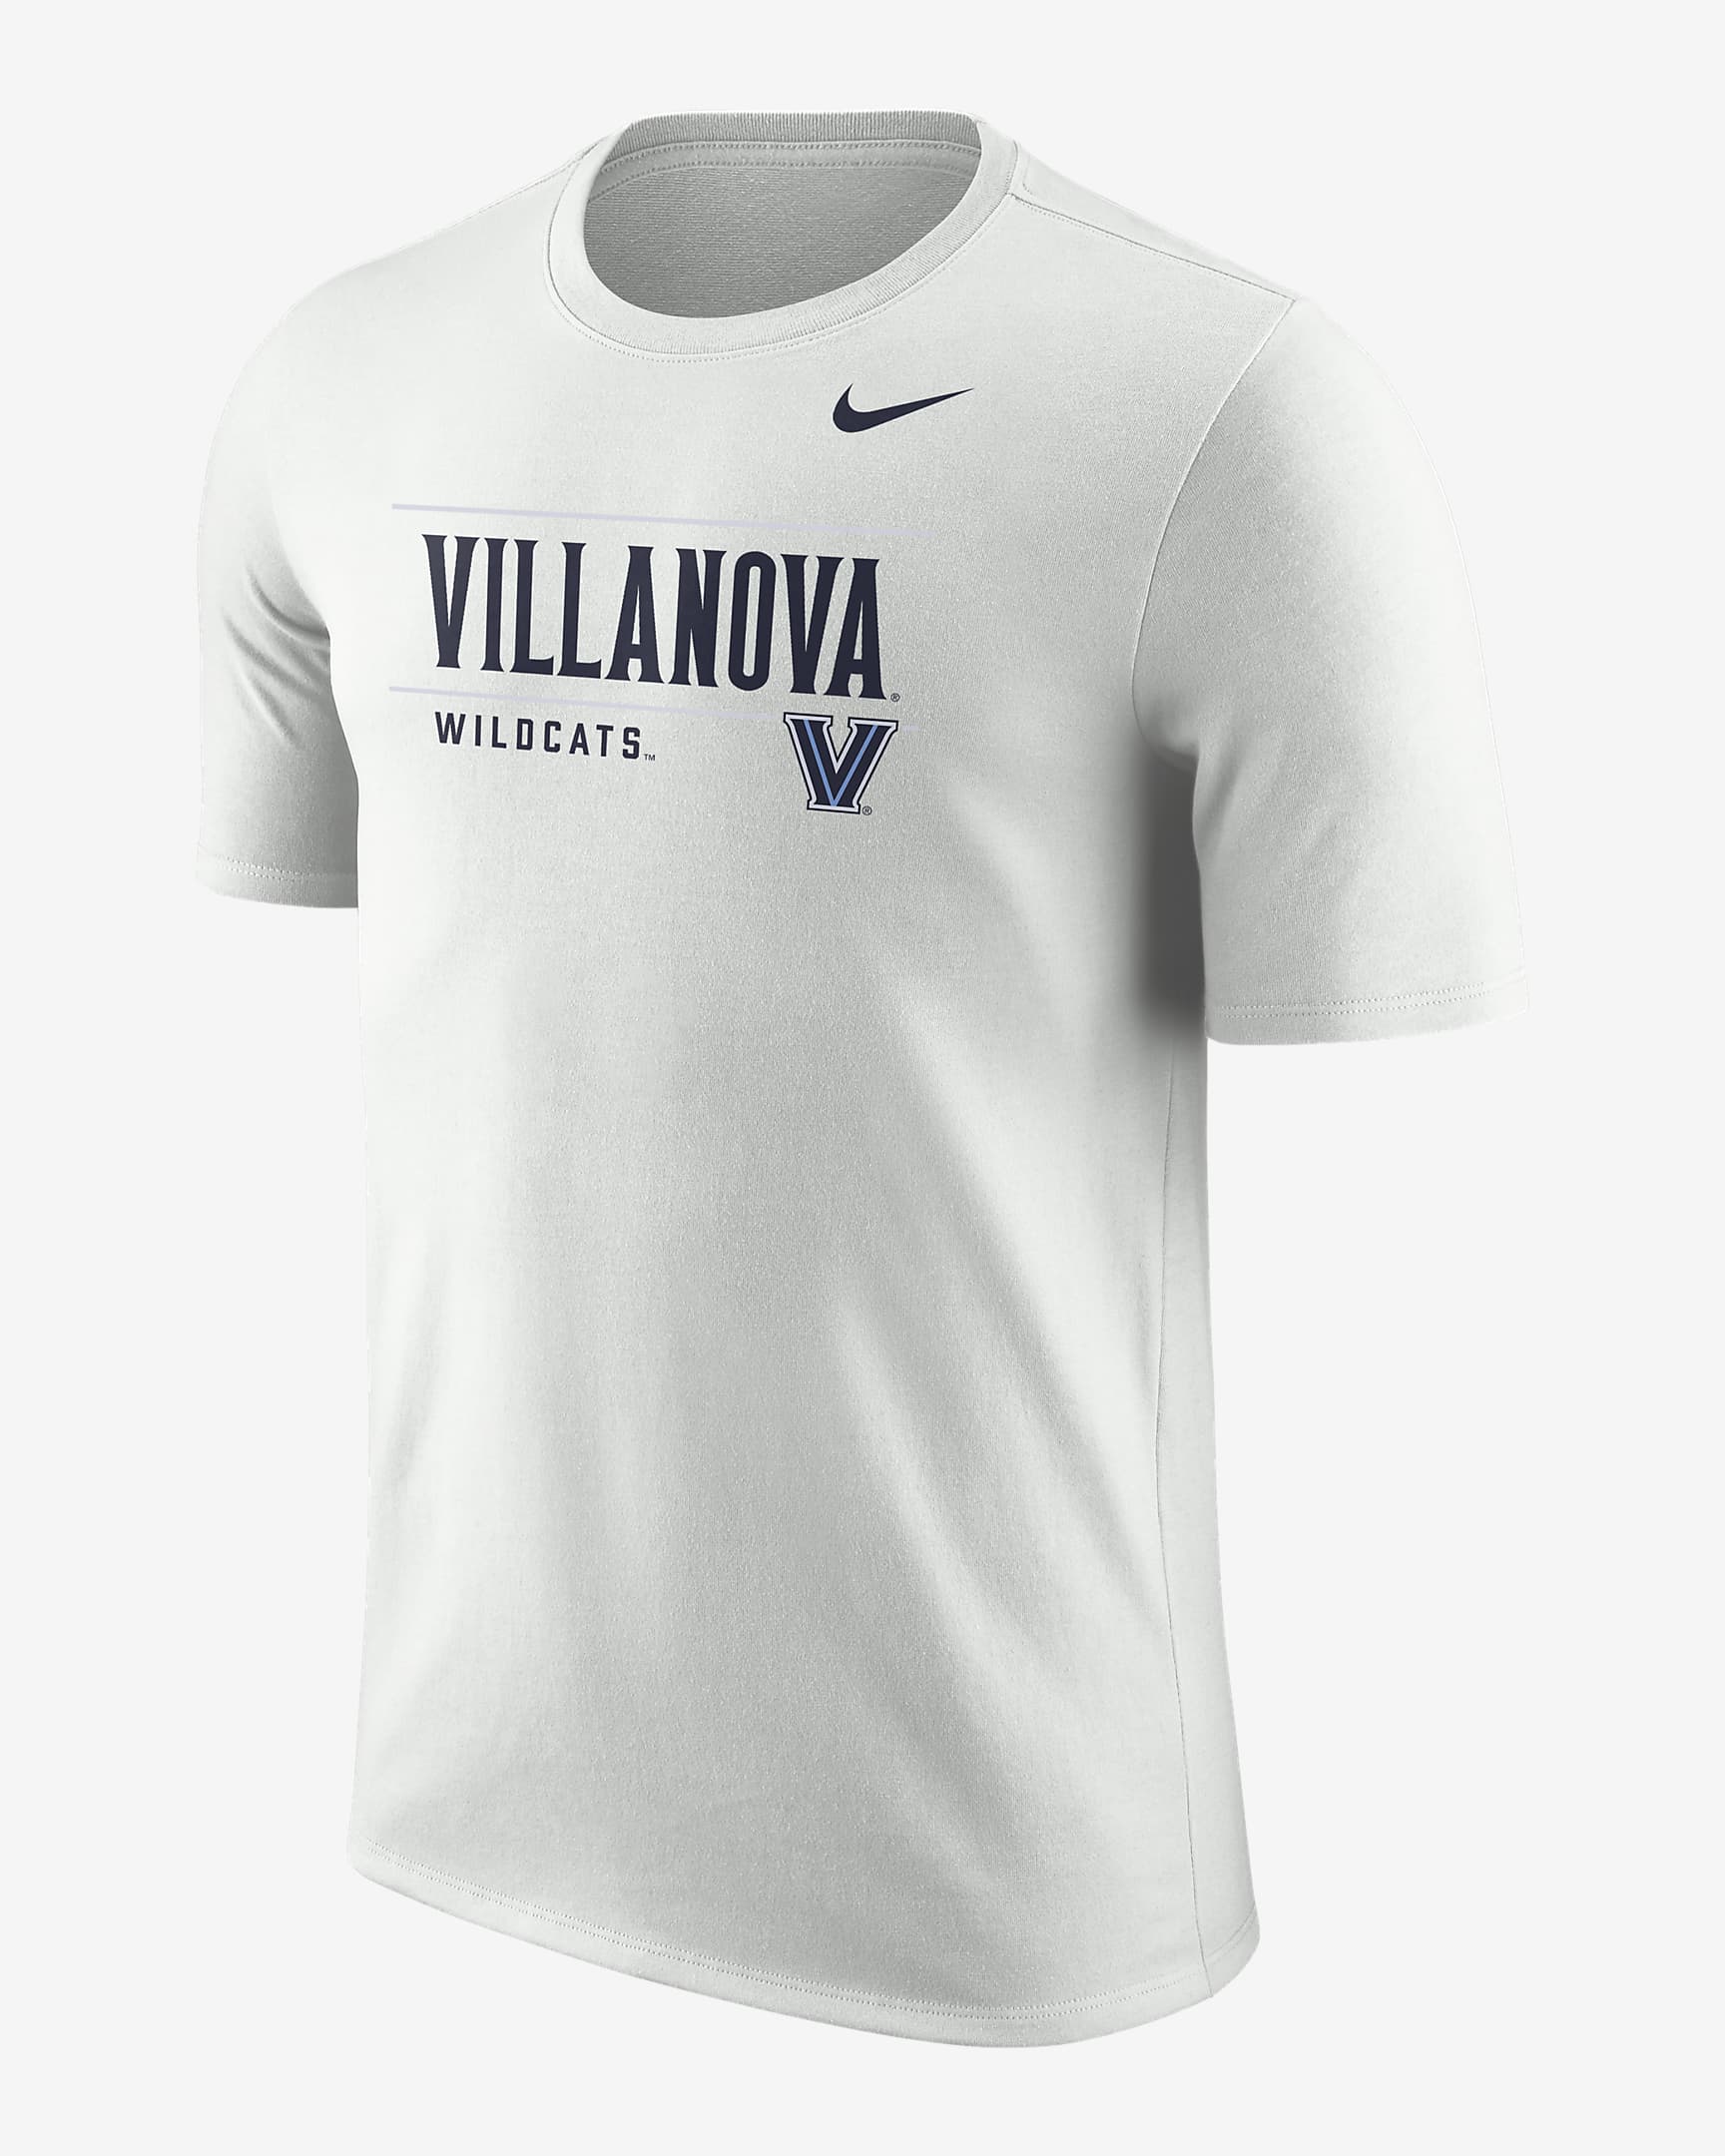 Playera Nike College para hombre Villanova. Nike.com